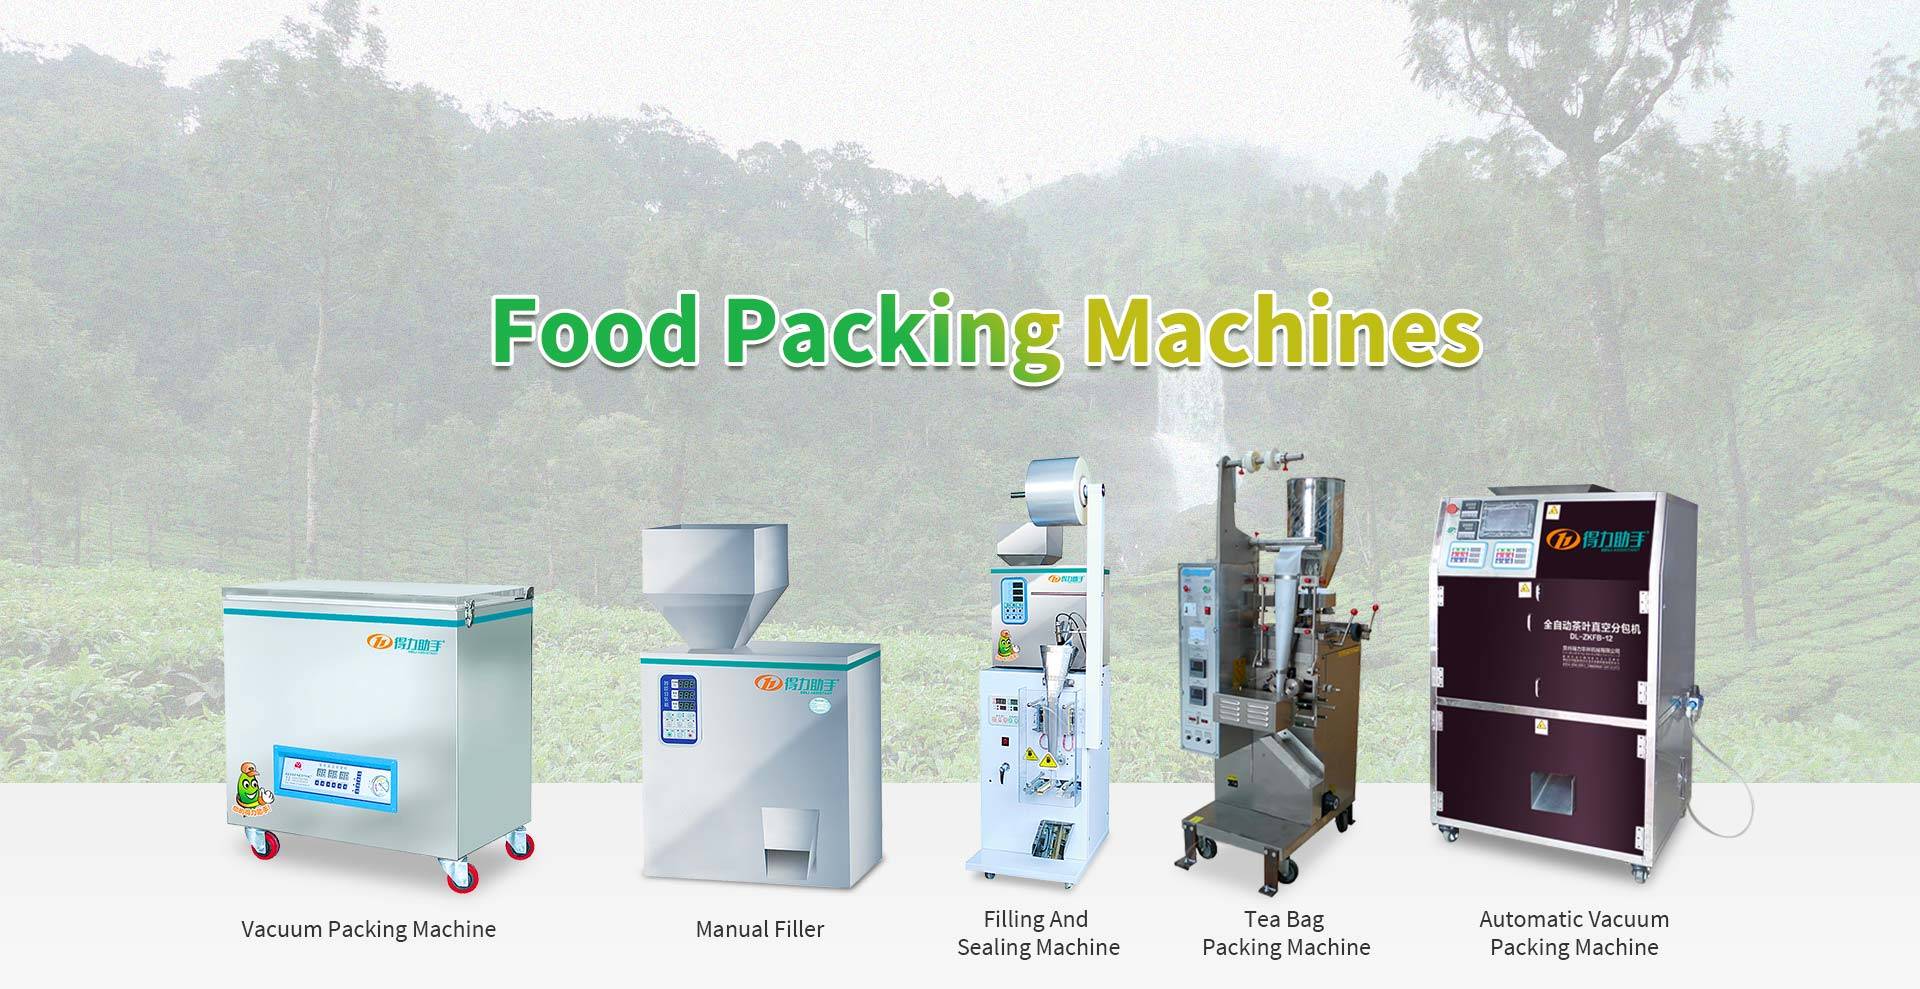 Stroje na balení potravin